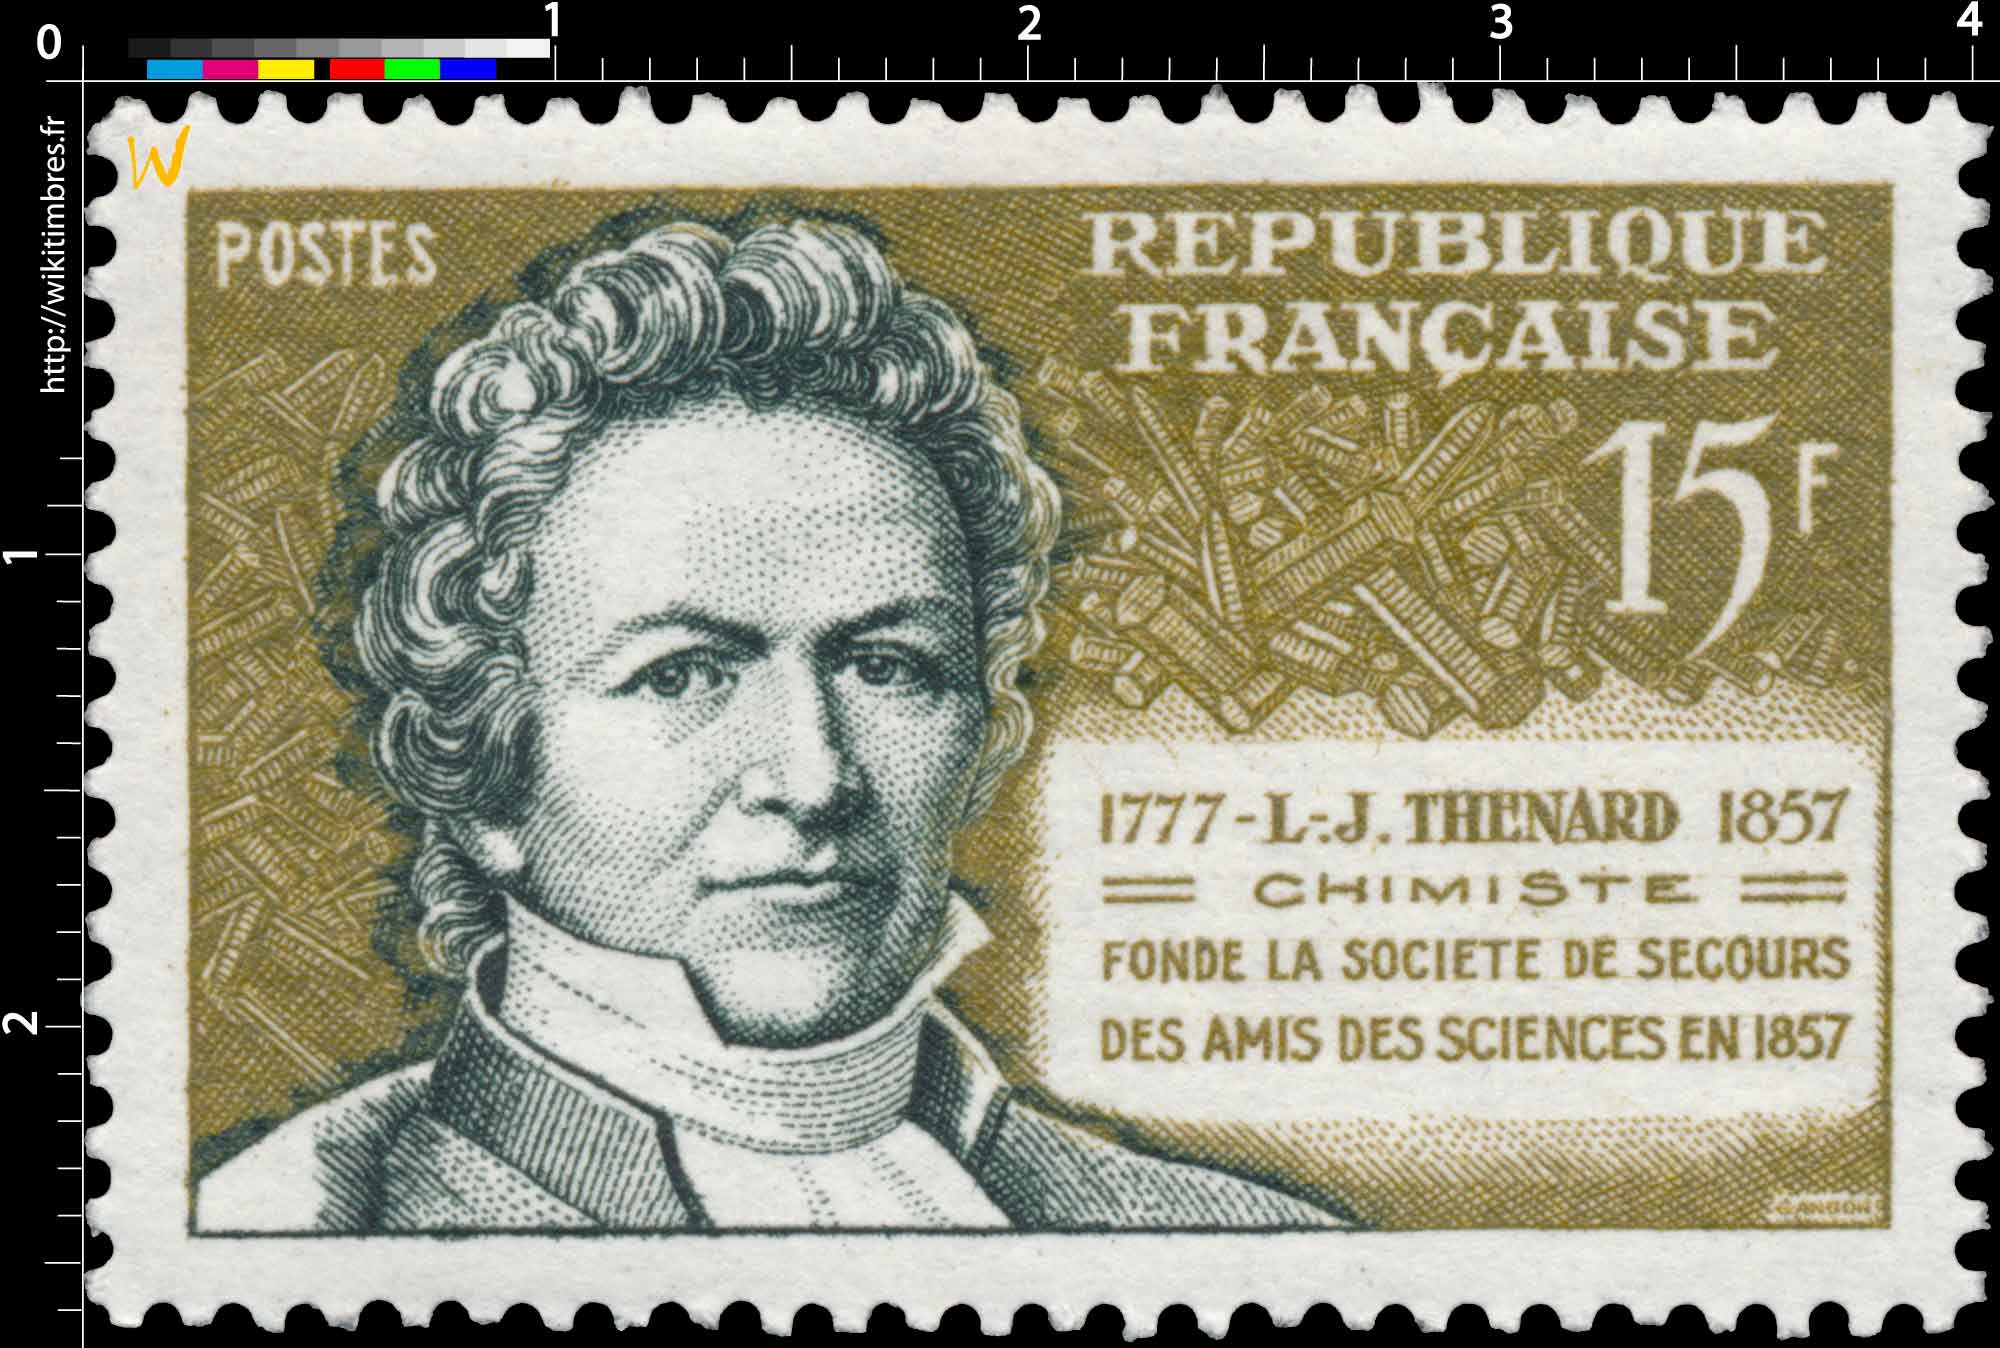 L.-J. THENARD 1777-1857 CHIMISTE FONDE LA SOCIÉTÉ DE SECOURS DES AMIS DES SCIENCES EN 1857